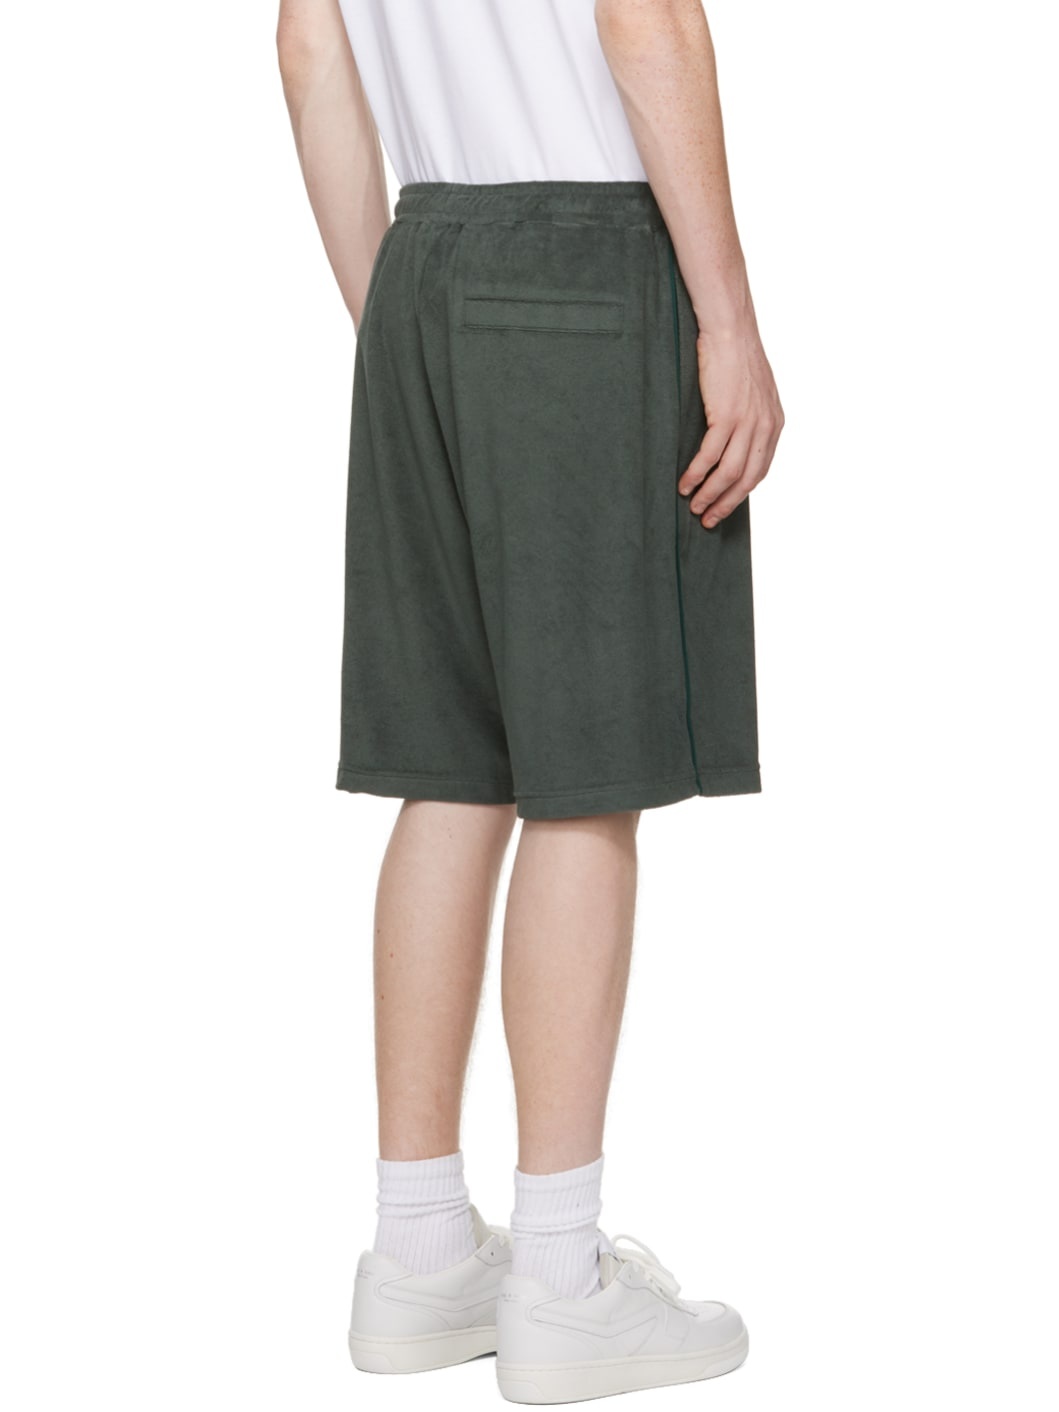 Green Piping Shorts - 3